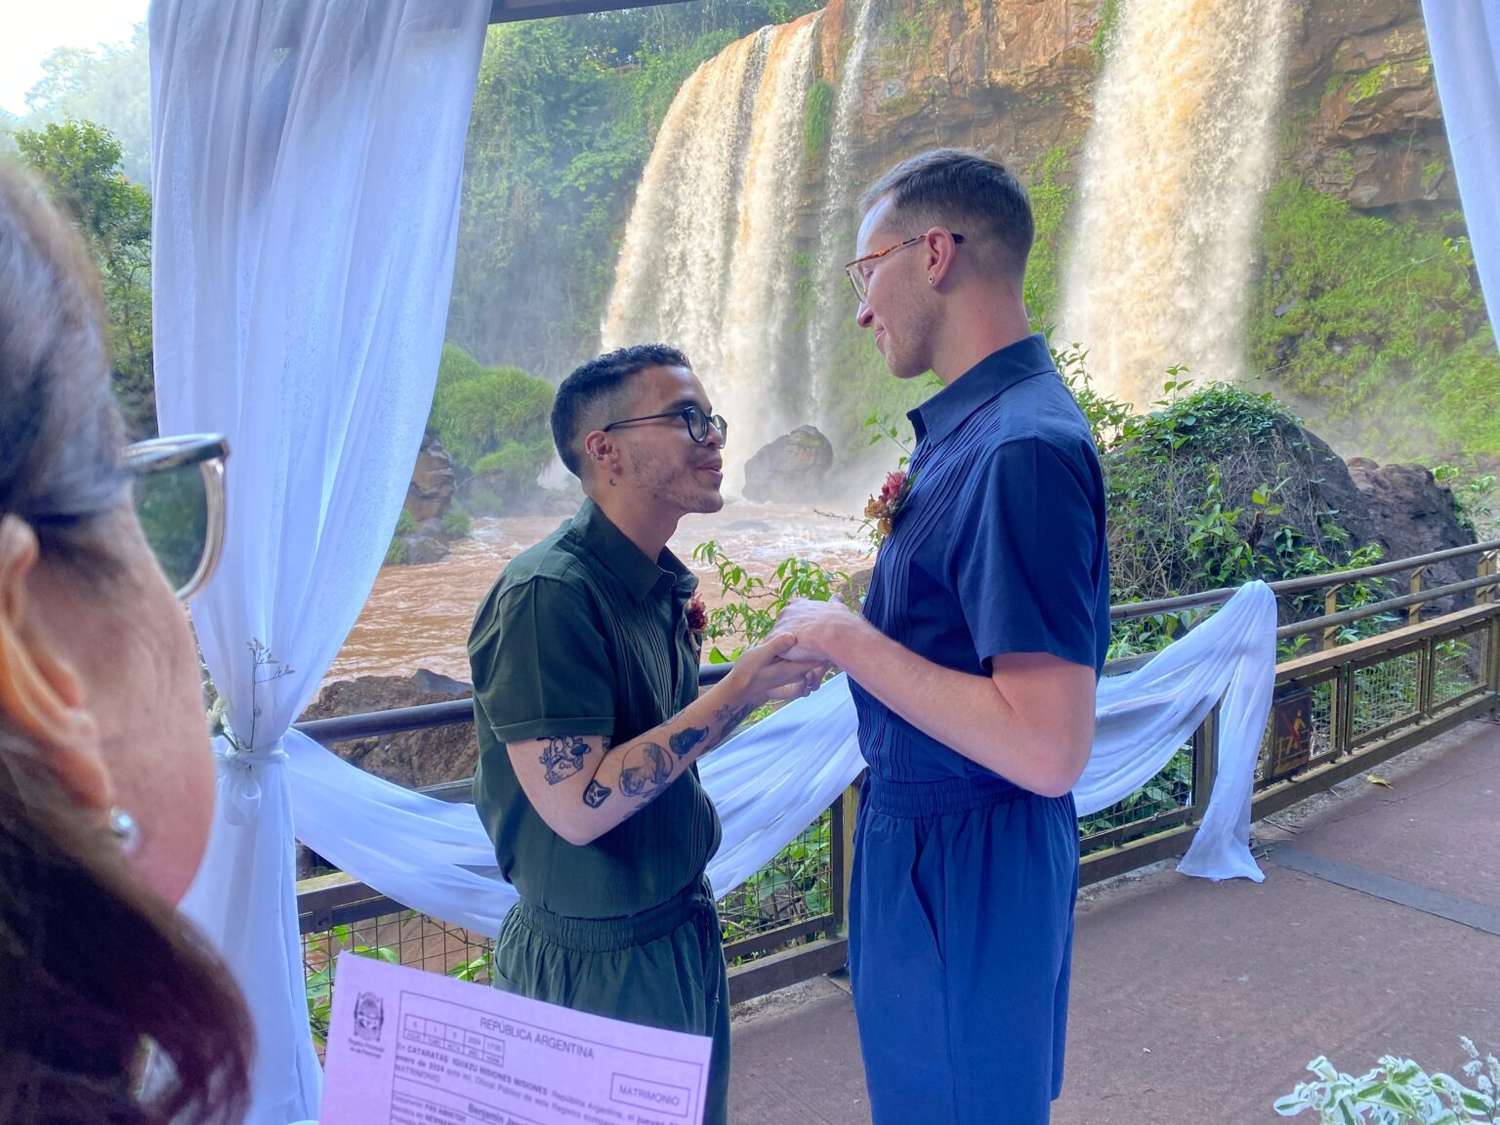 Primera boda de turistas extranjeros en Misiones,un hito histórico en las majestuosas Cataratas del Iguazú